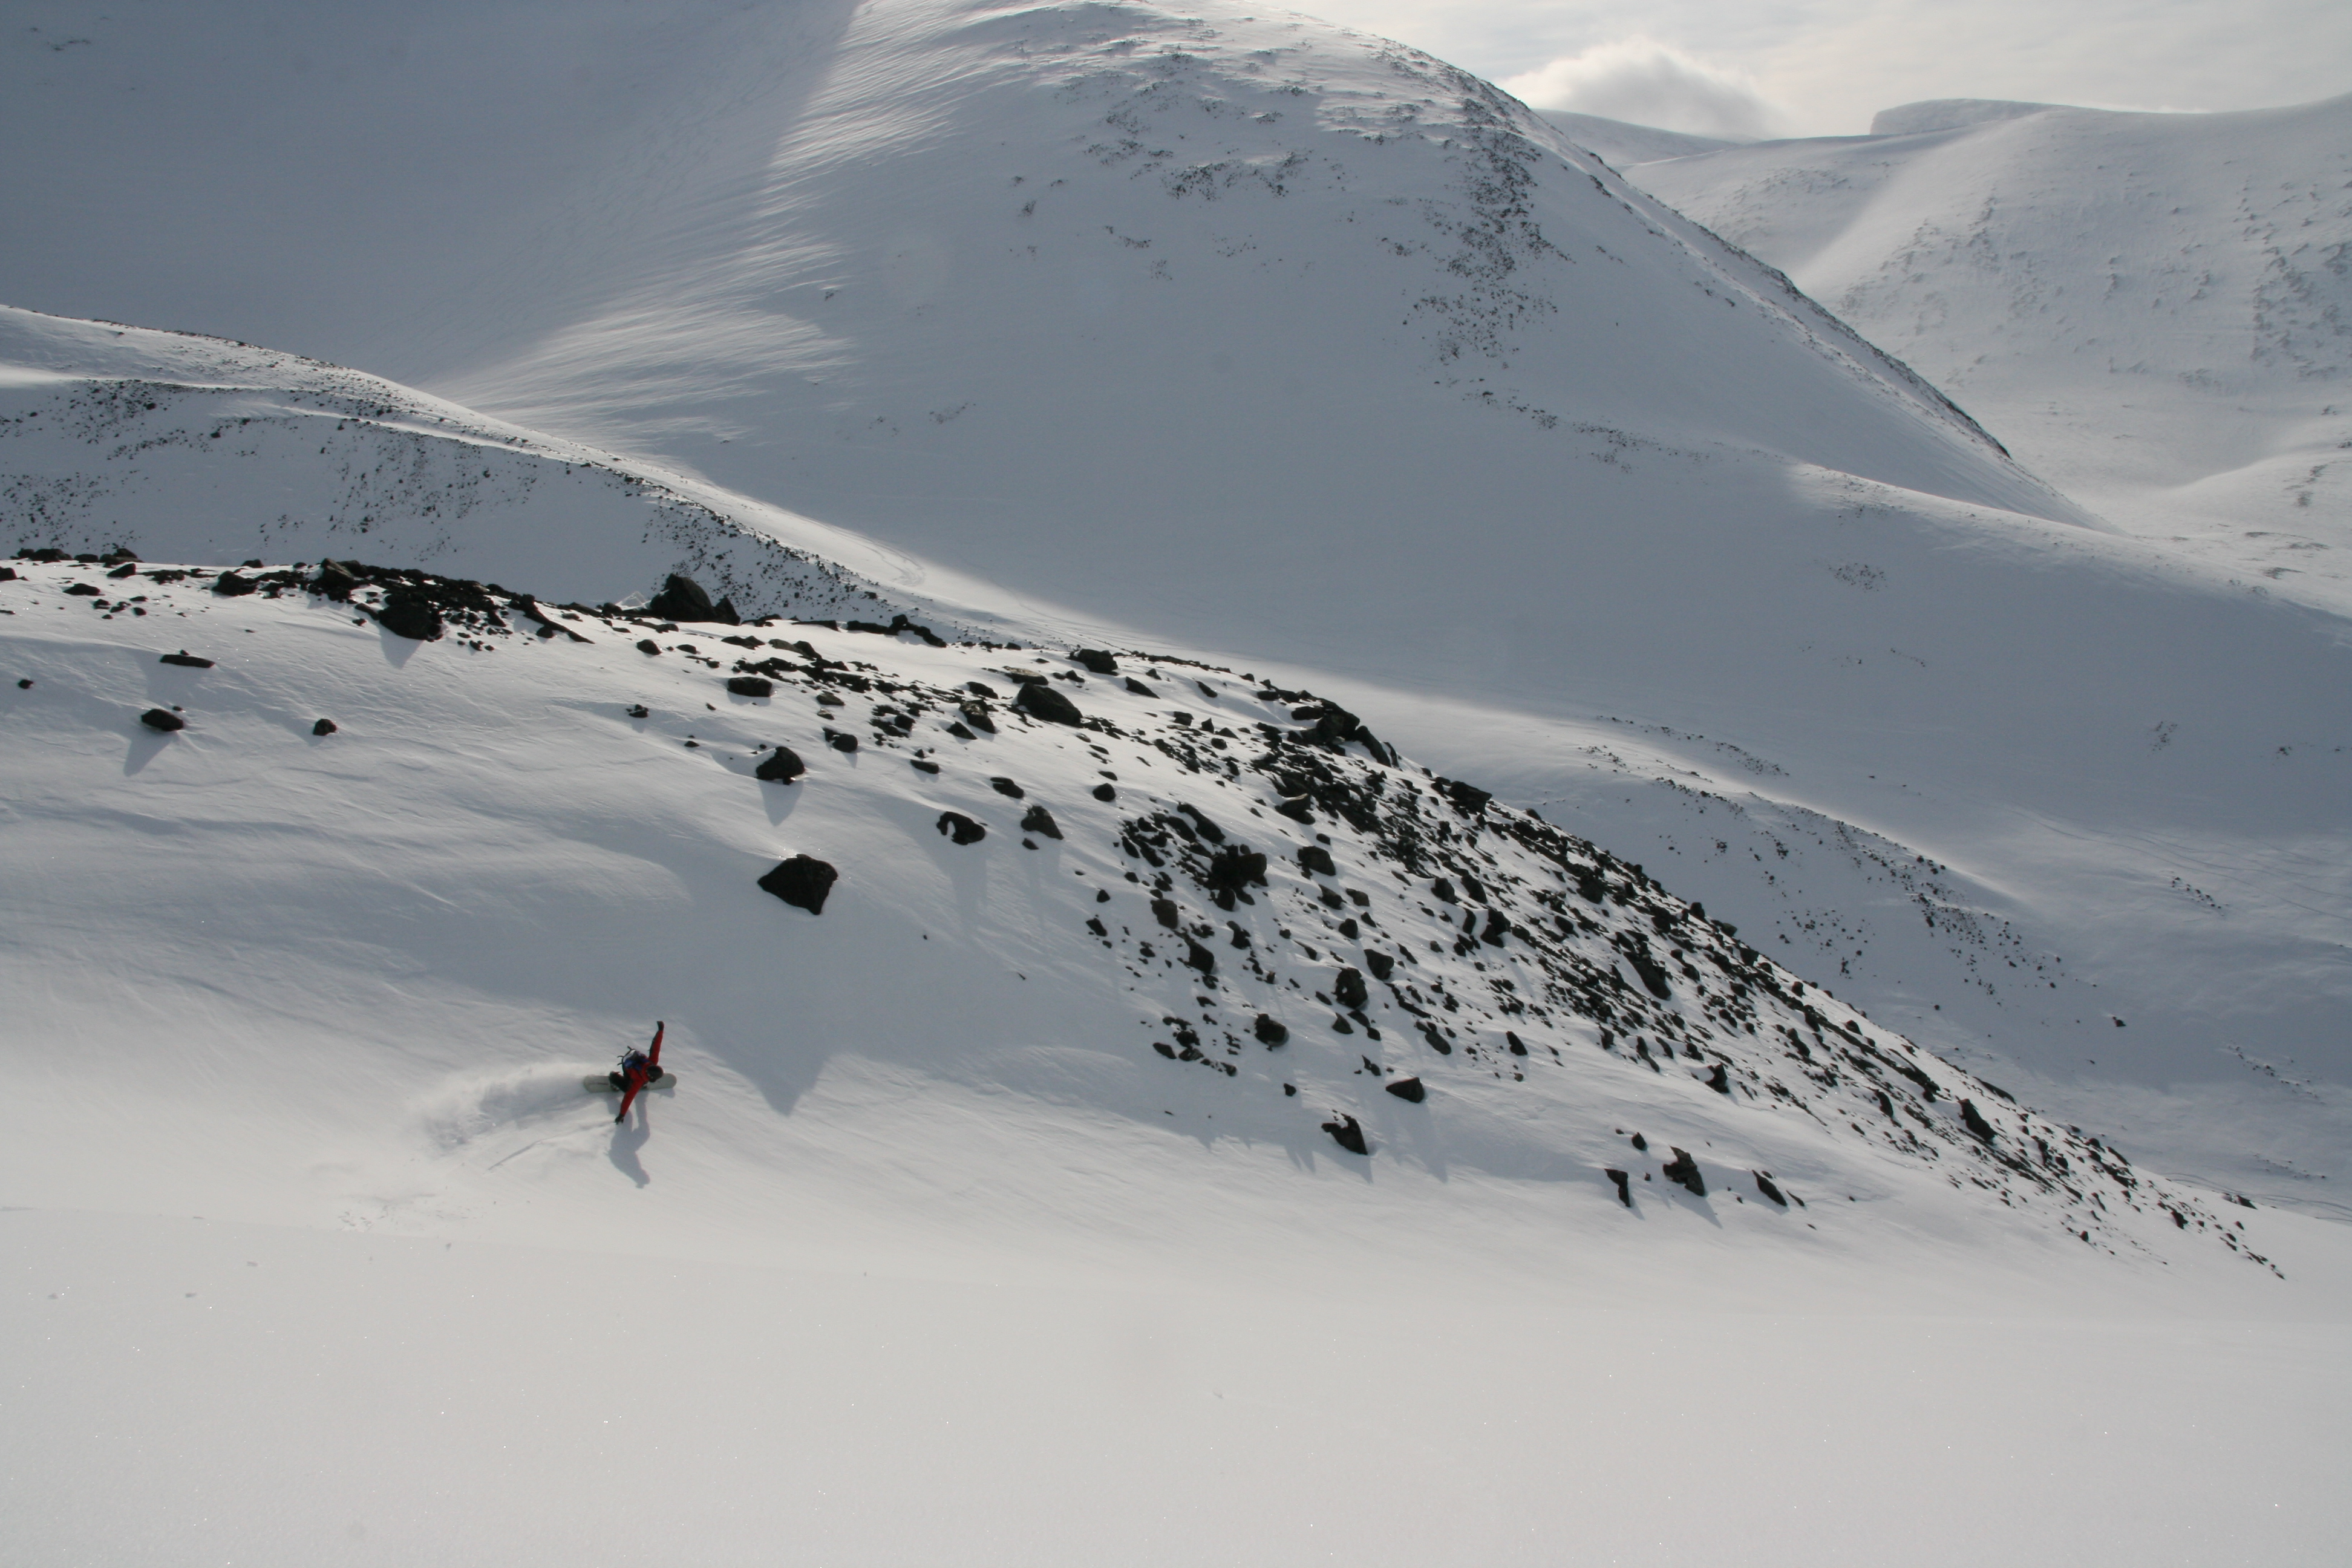  Snowboard och heli i riksgrnsen! 8 april 2009.  Foto: Andreas Bengtsson